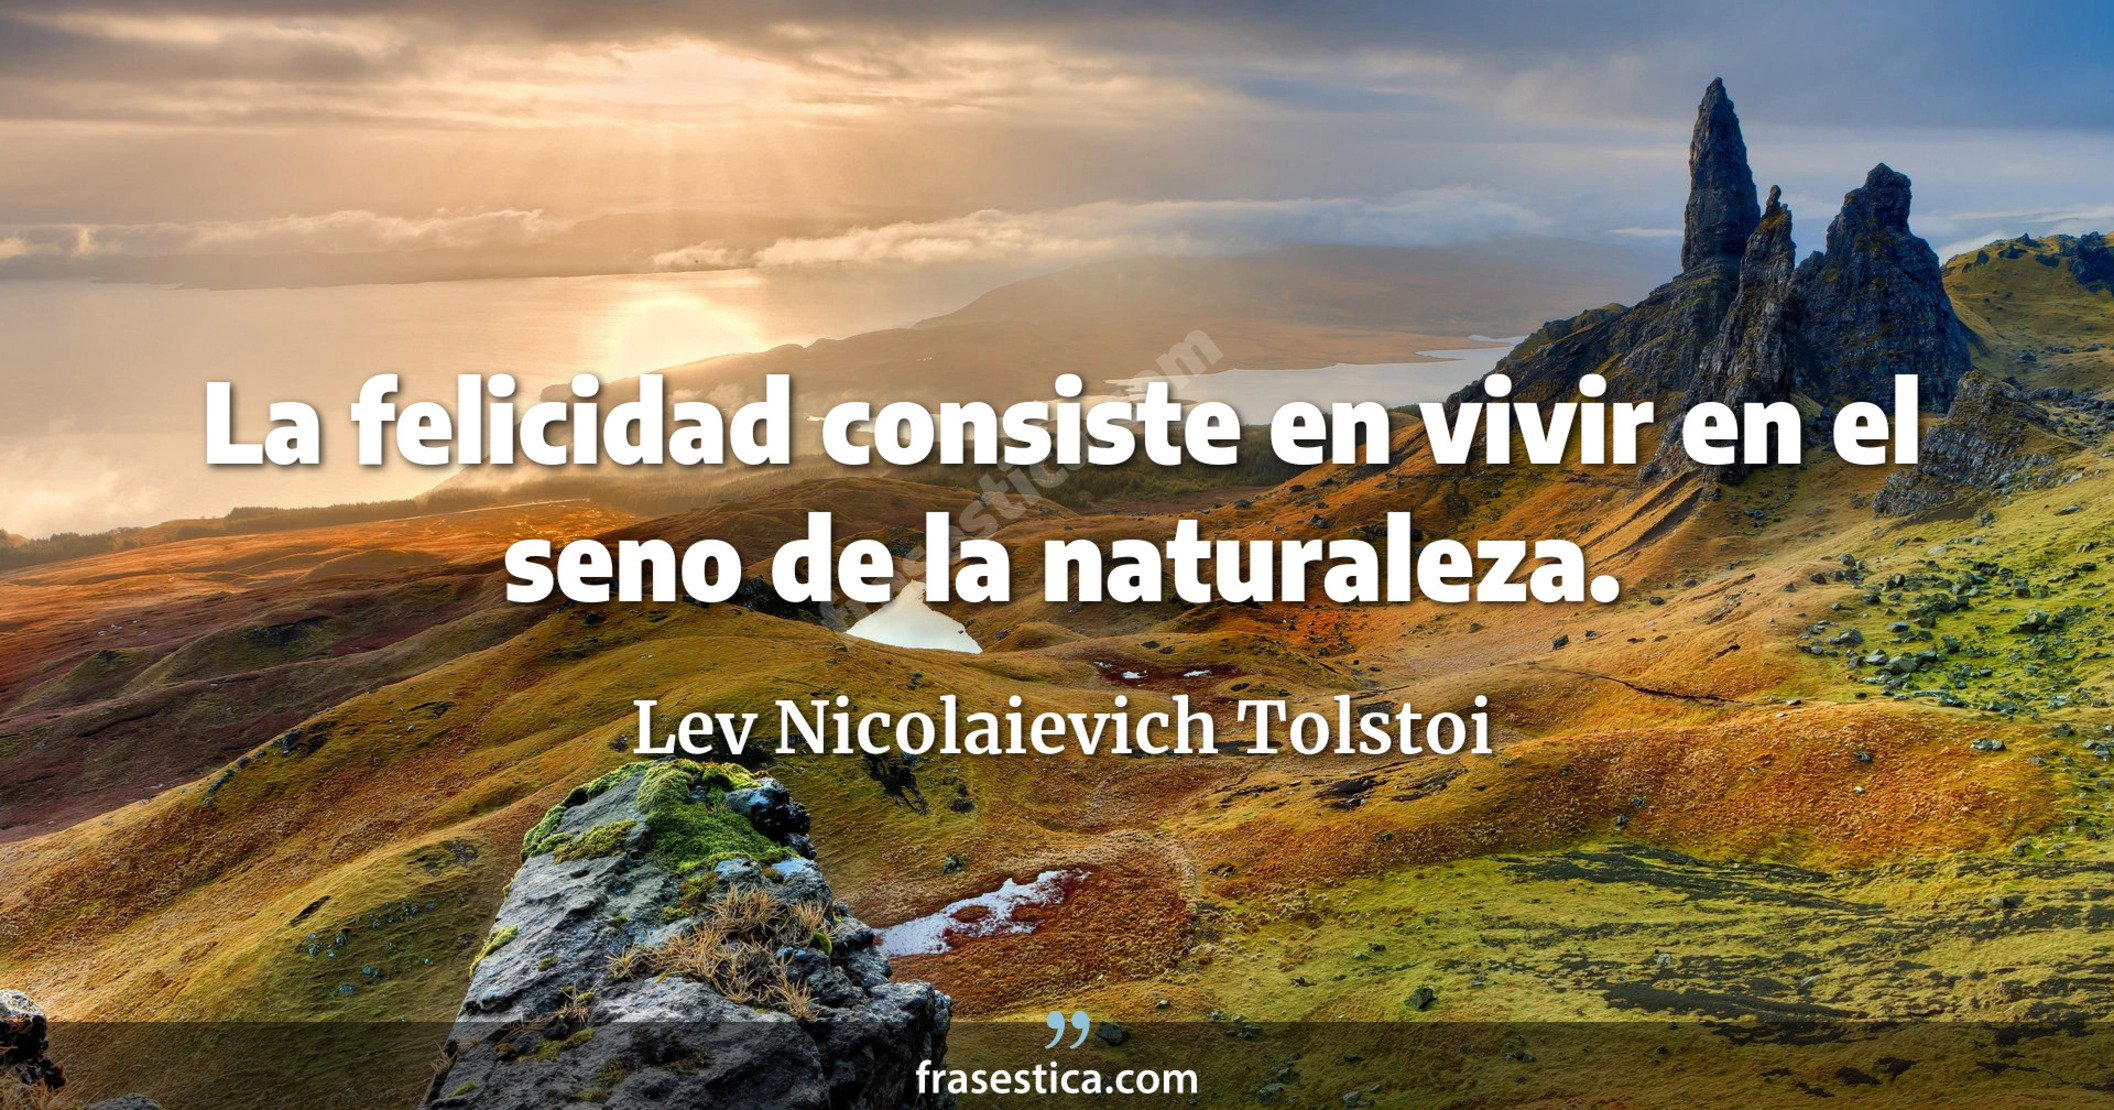 La felicidad consiste en vivir en el seno de la naturaleza. - Lev Nicolaievich Tolstoi